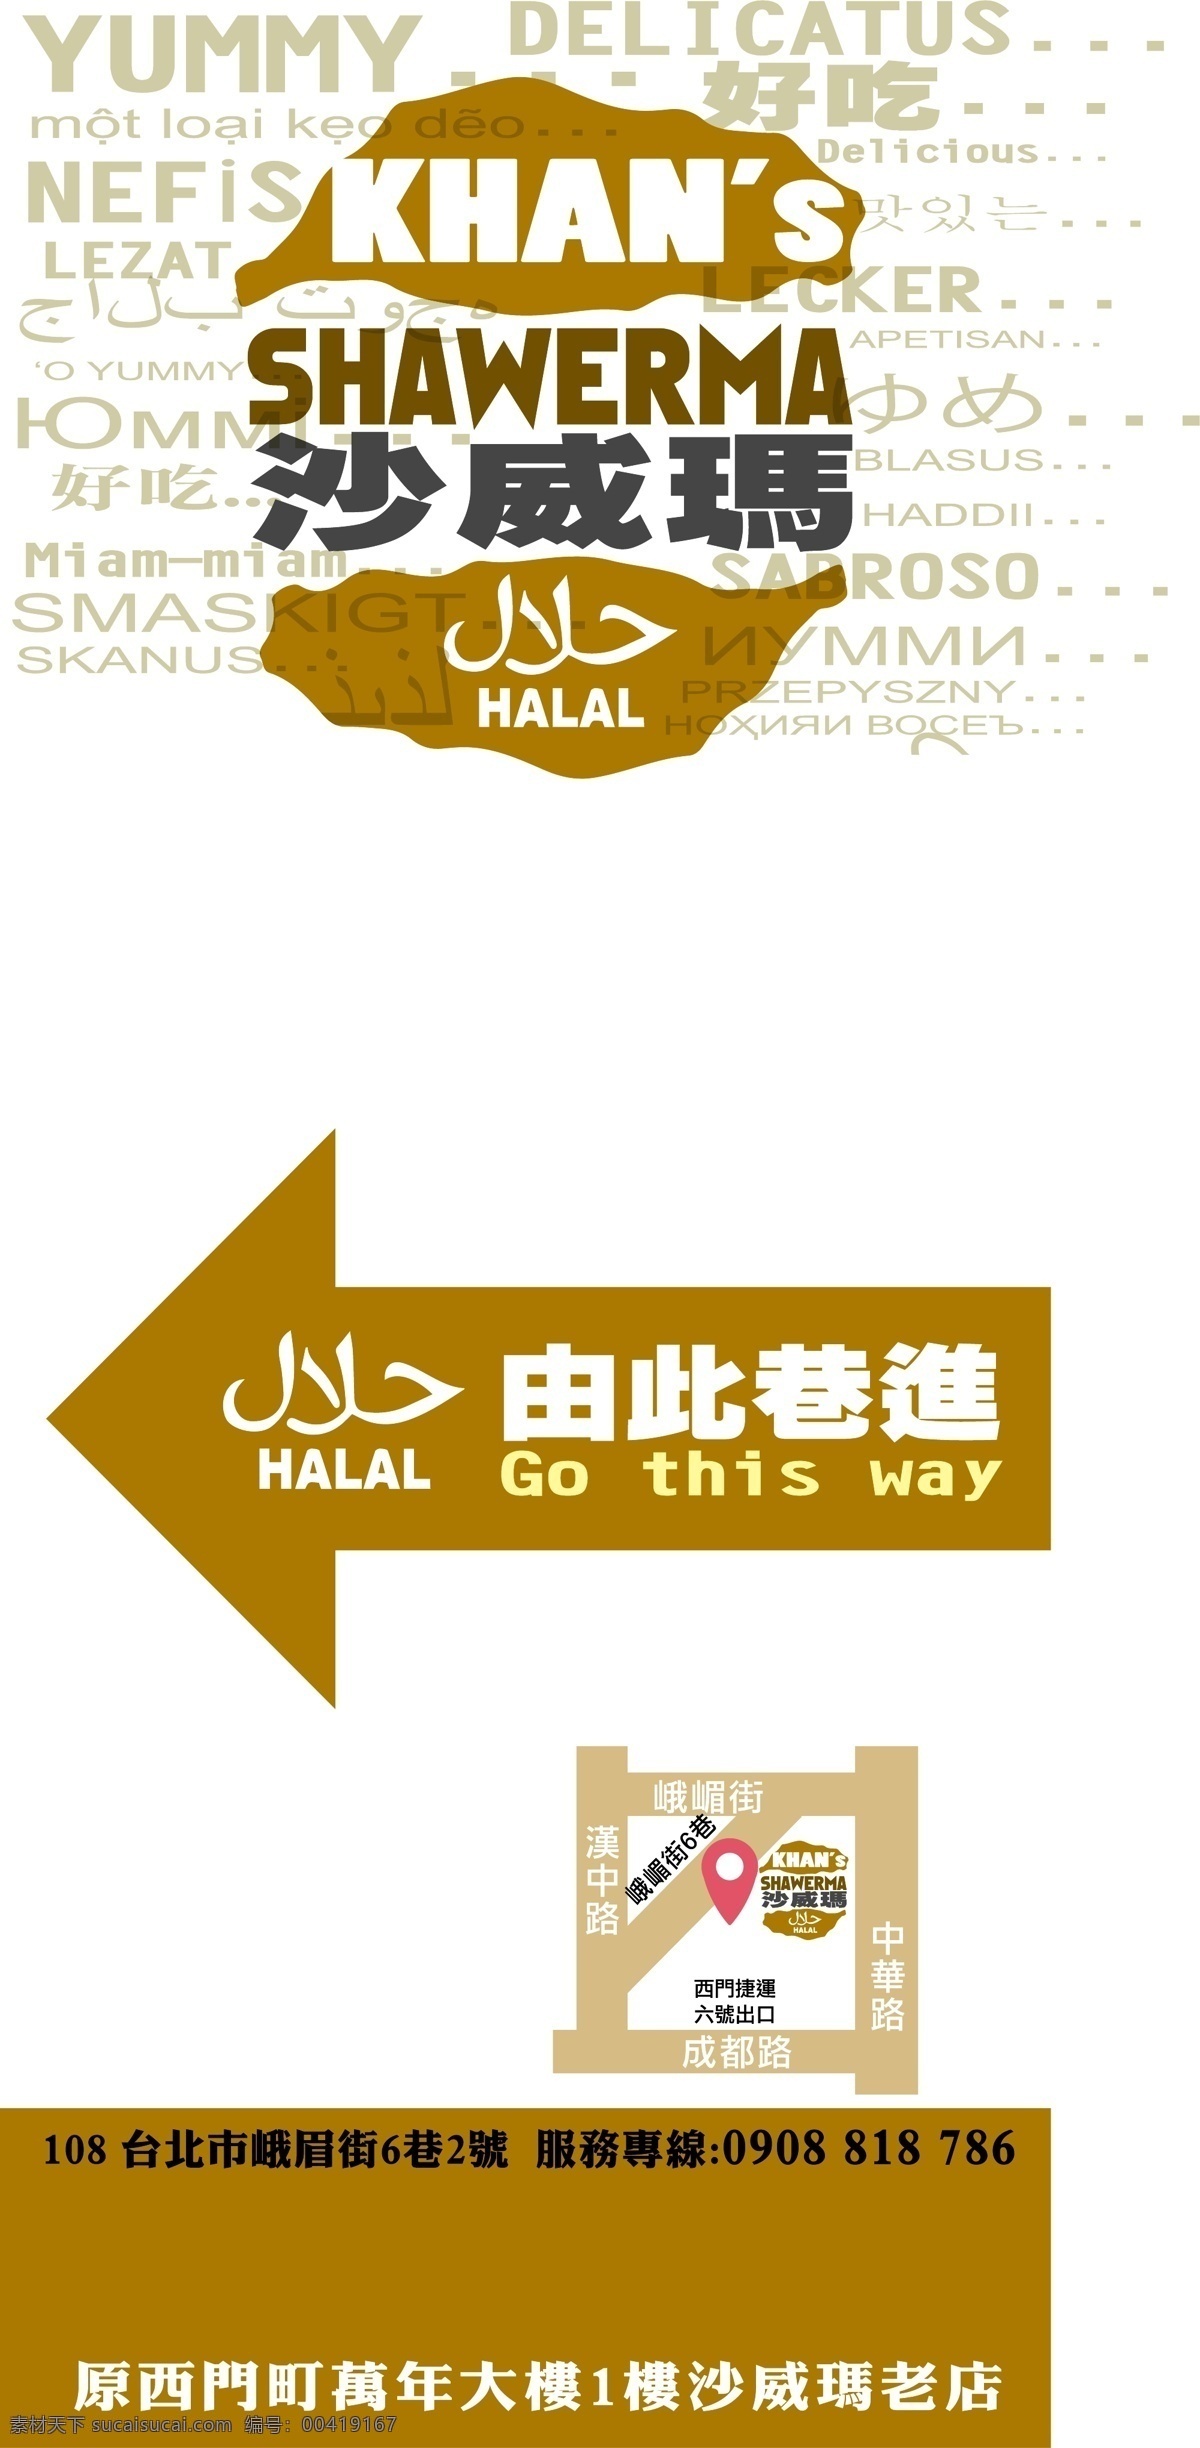 中 東 沙 威 瑪 美食 指示牌 沙威瑪 展示牌 中東美食 shawerma halal